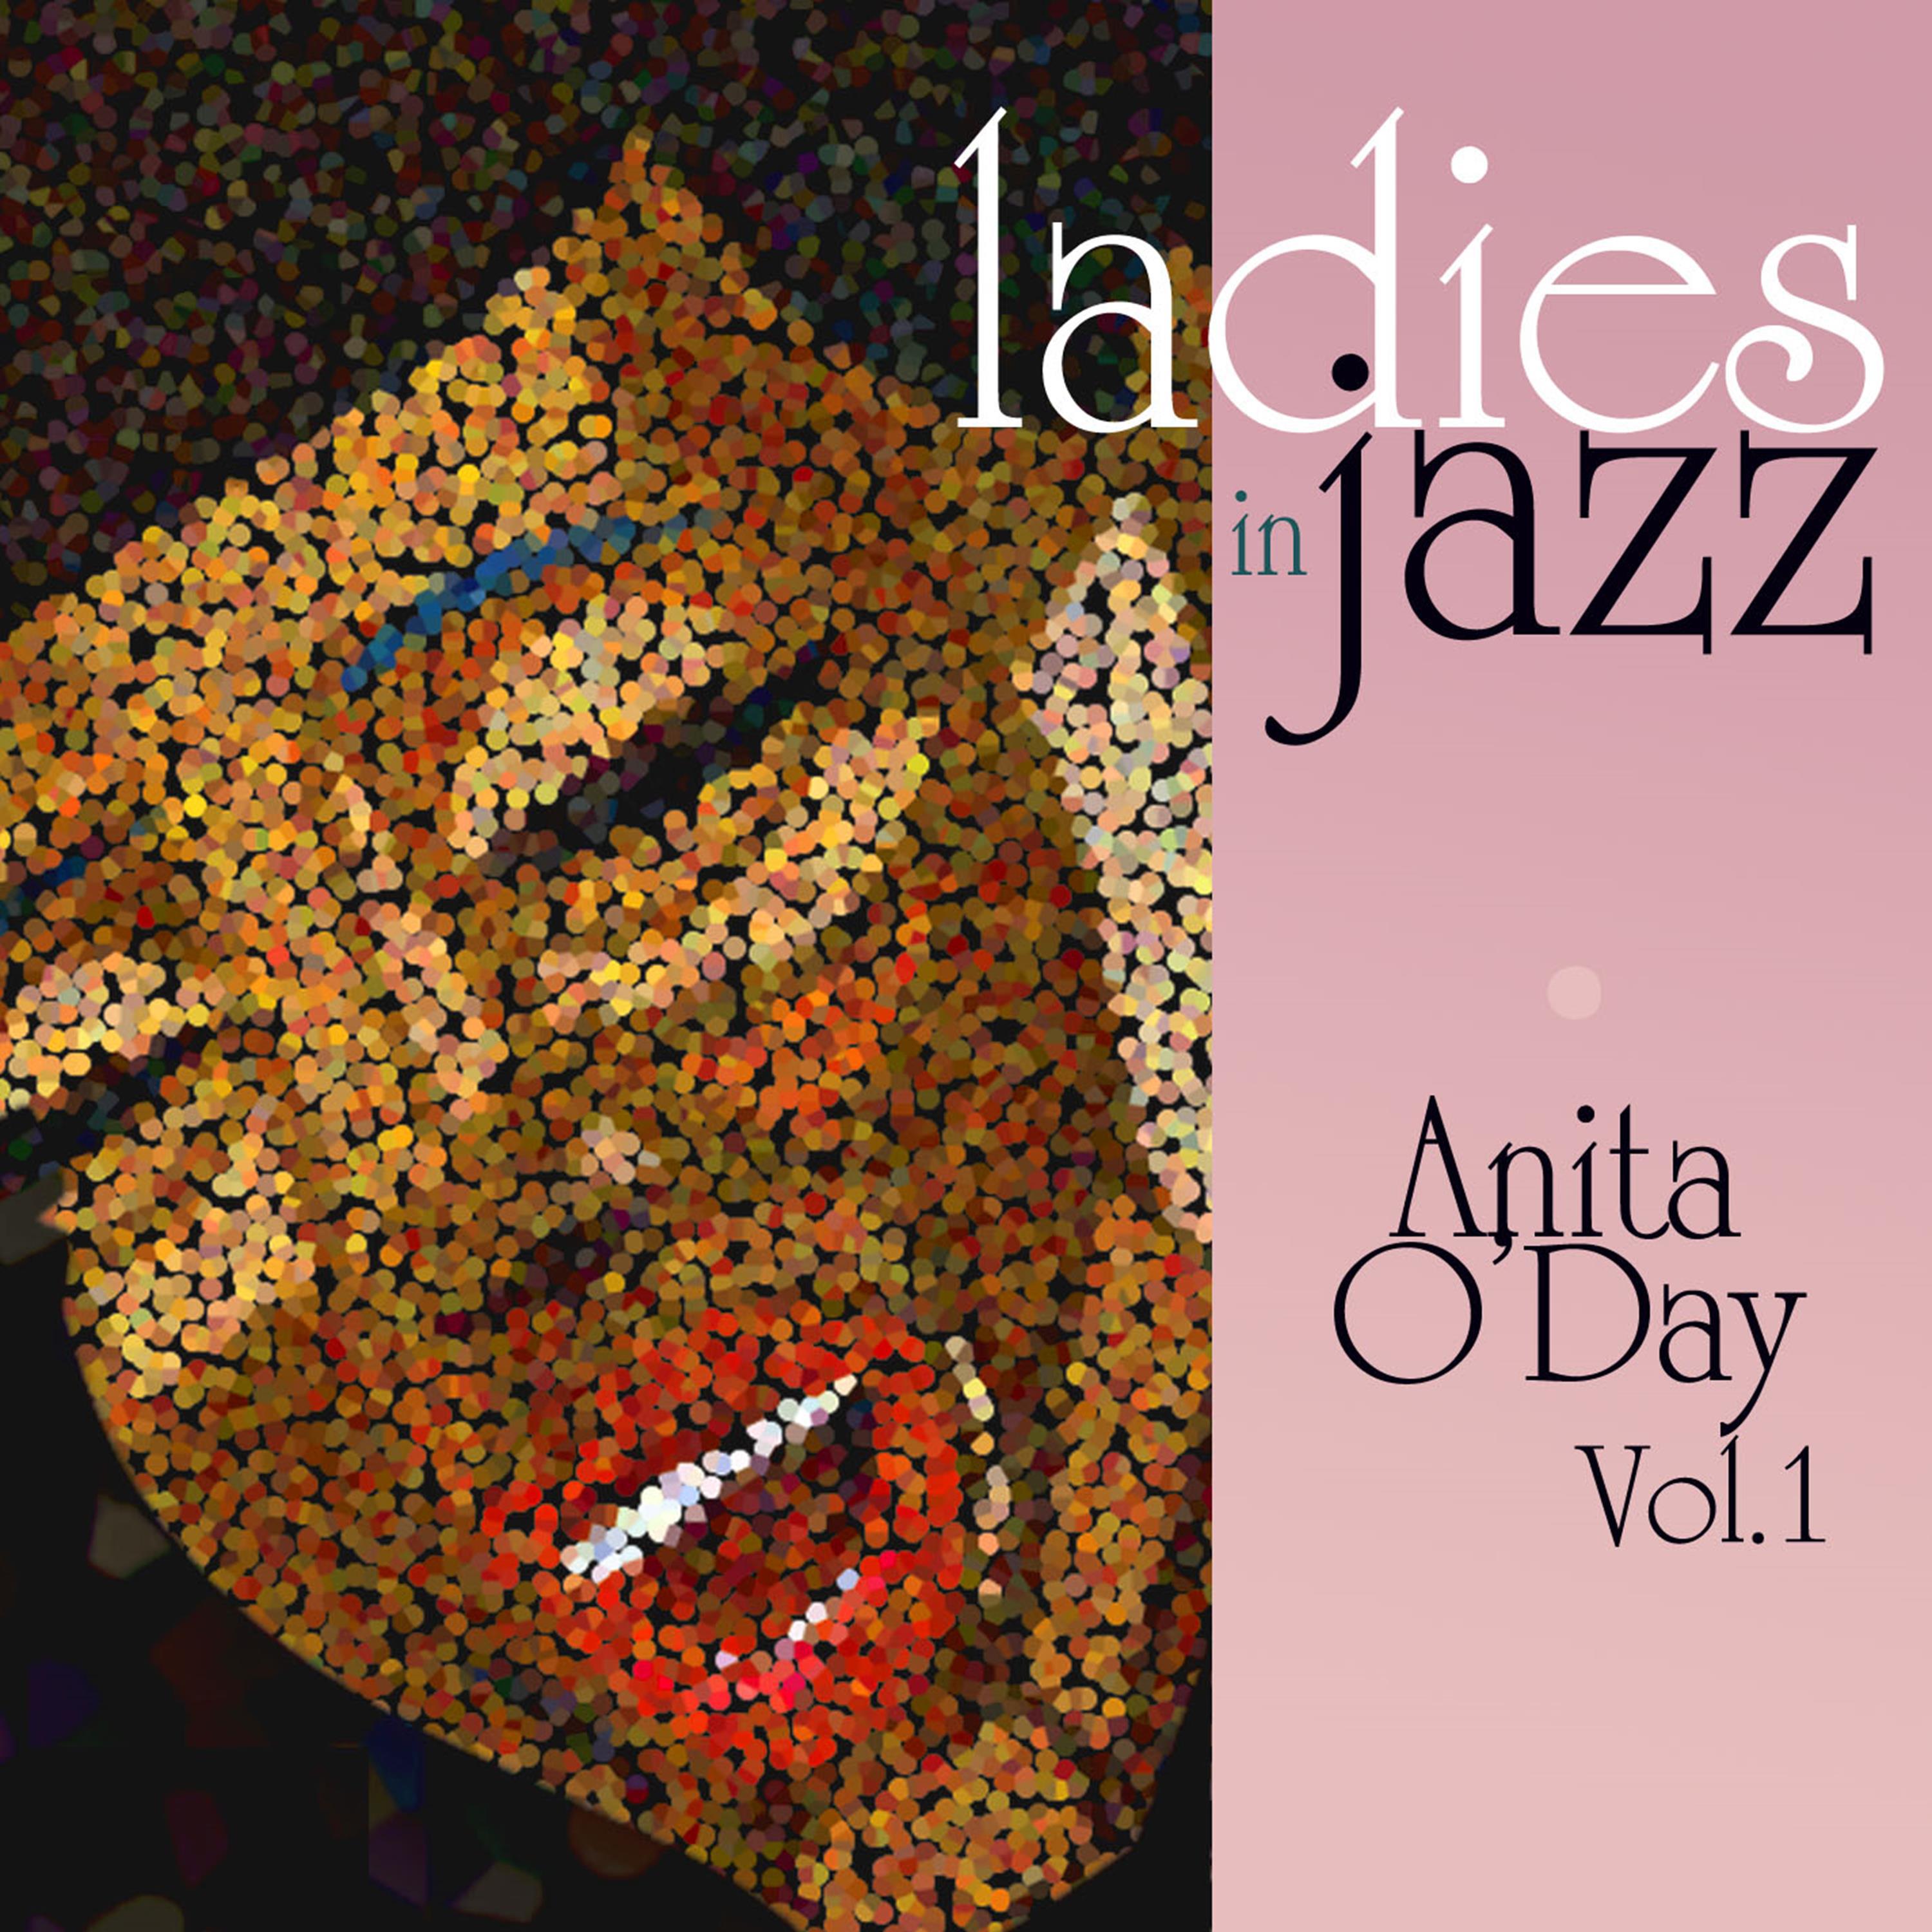 Ladies in Jazz - Anita O'Day, Vol. 1